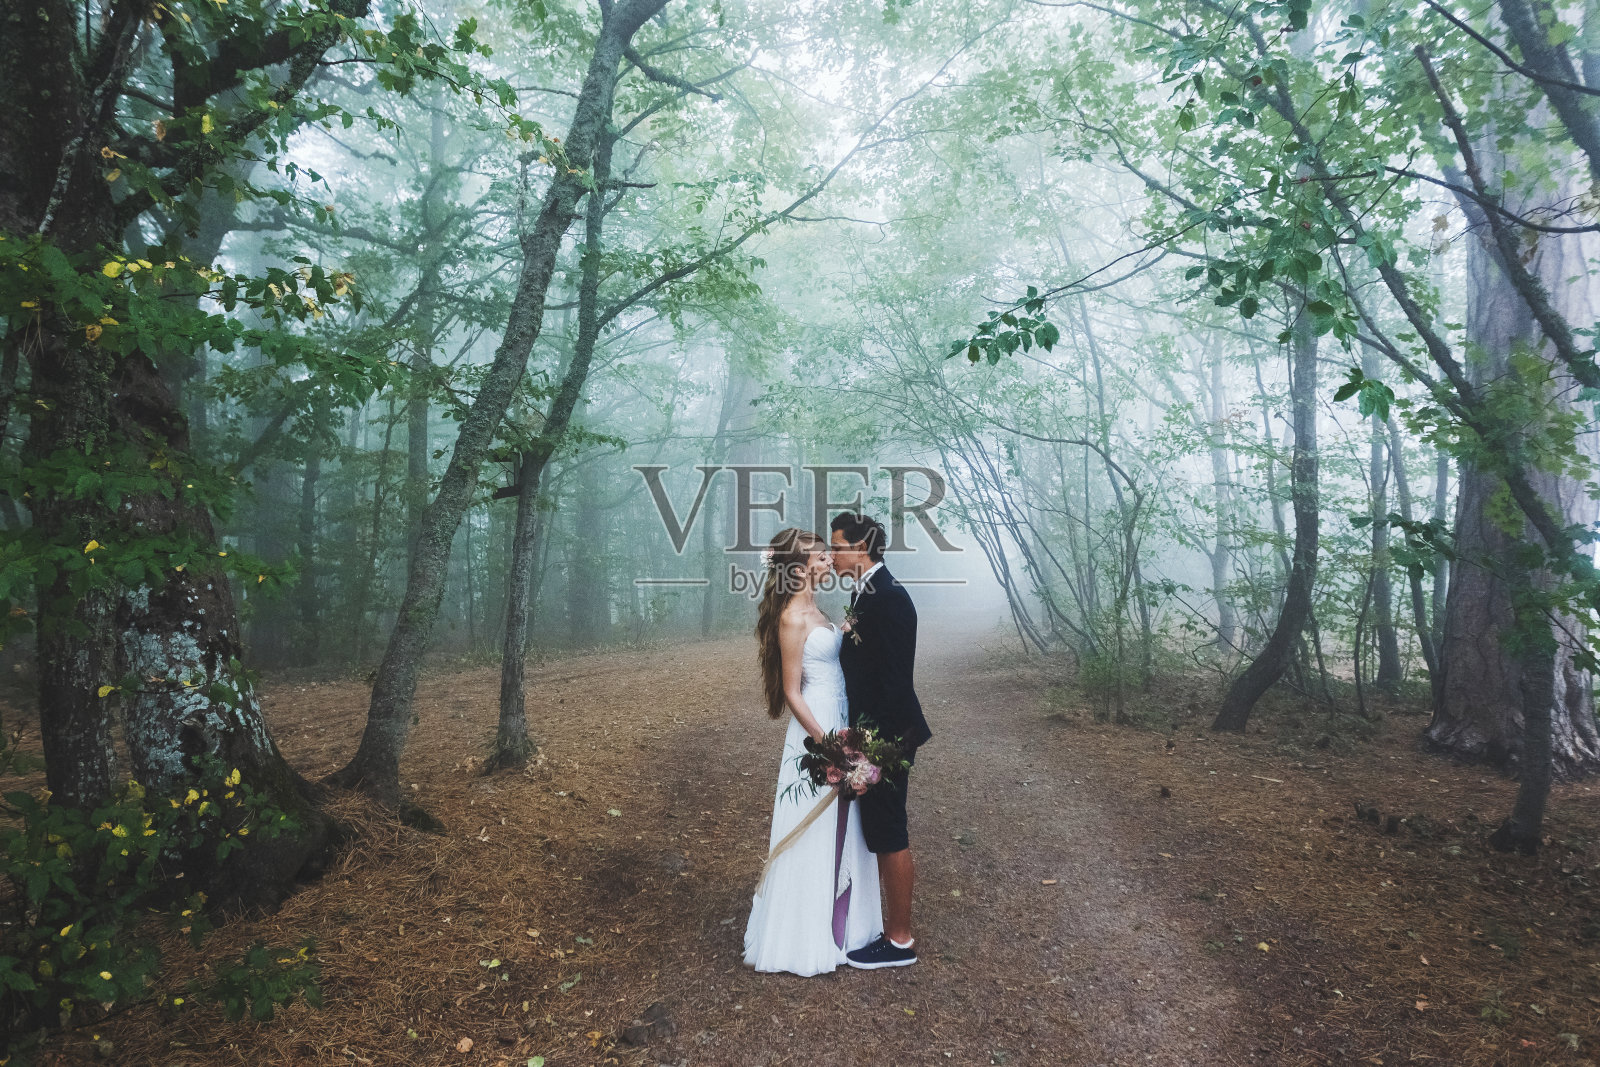 新郎新娘漫步在秋天的森林里。神奇的秋雾和神秘的心情。美丽的大自然照片摄影图片